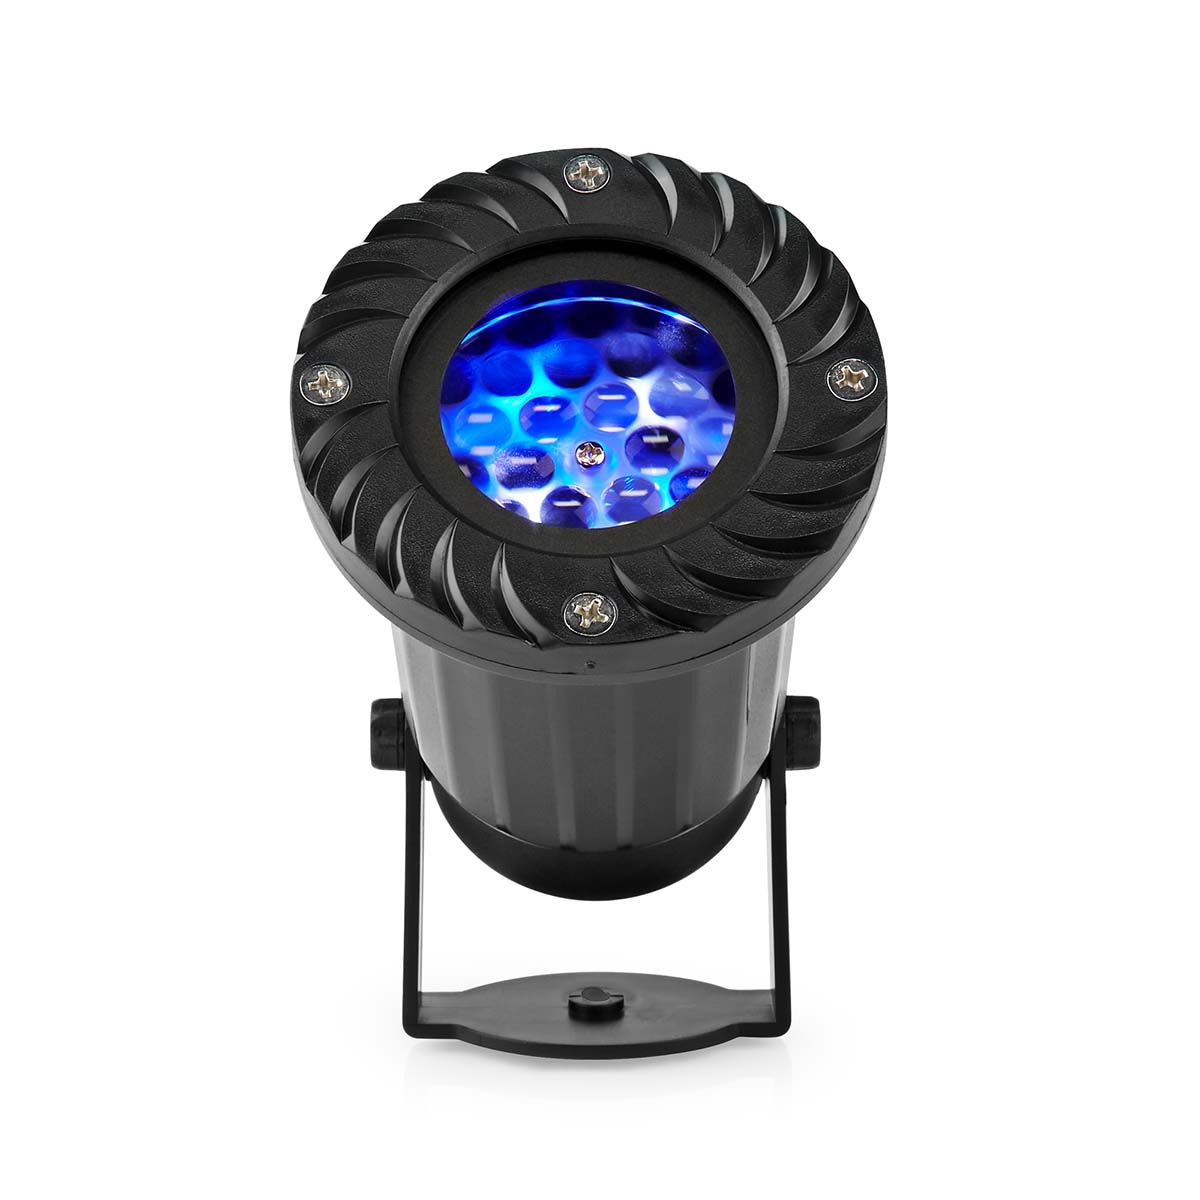 LED snøfnugg projektor, Hvite og blå iskrystaller, Innendørs eller utendørs